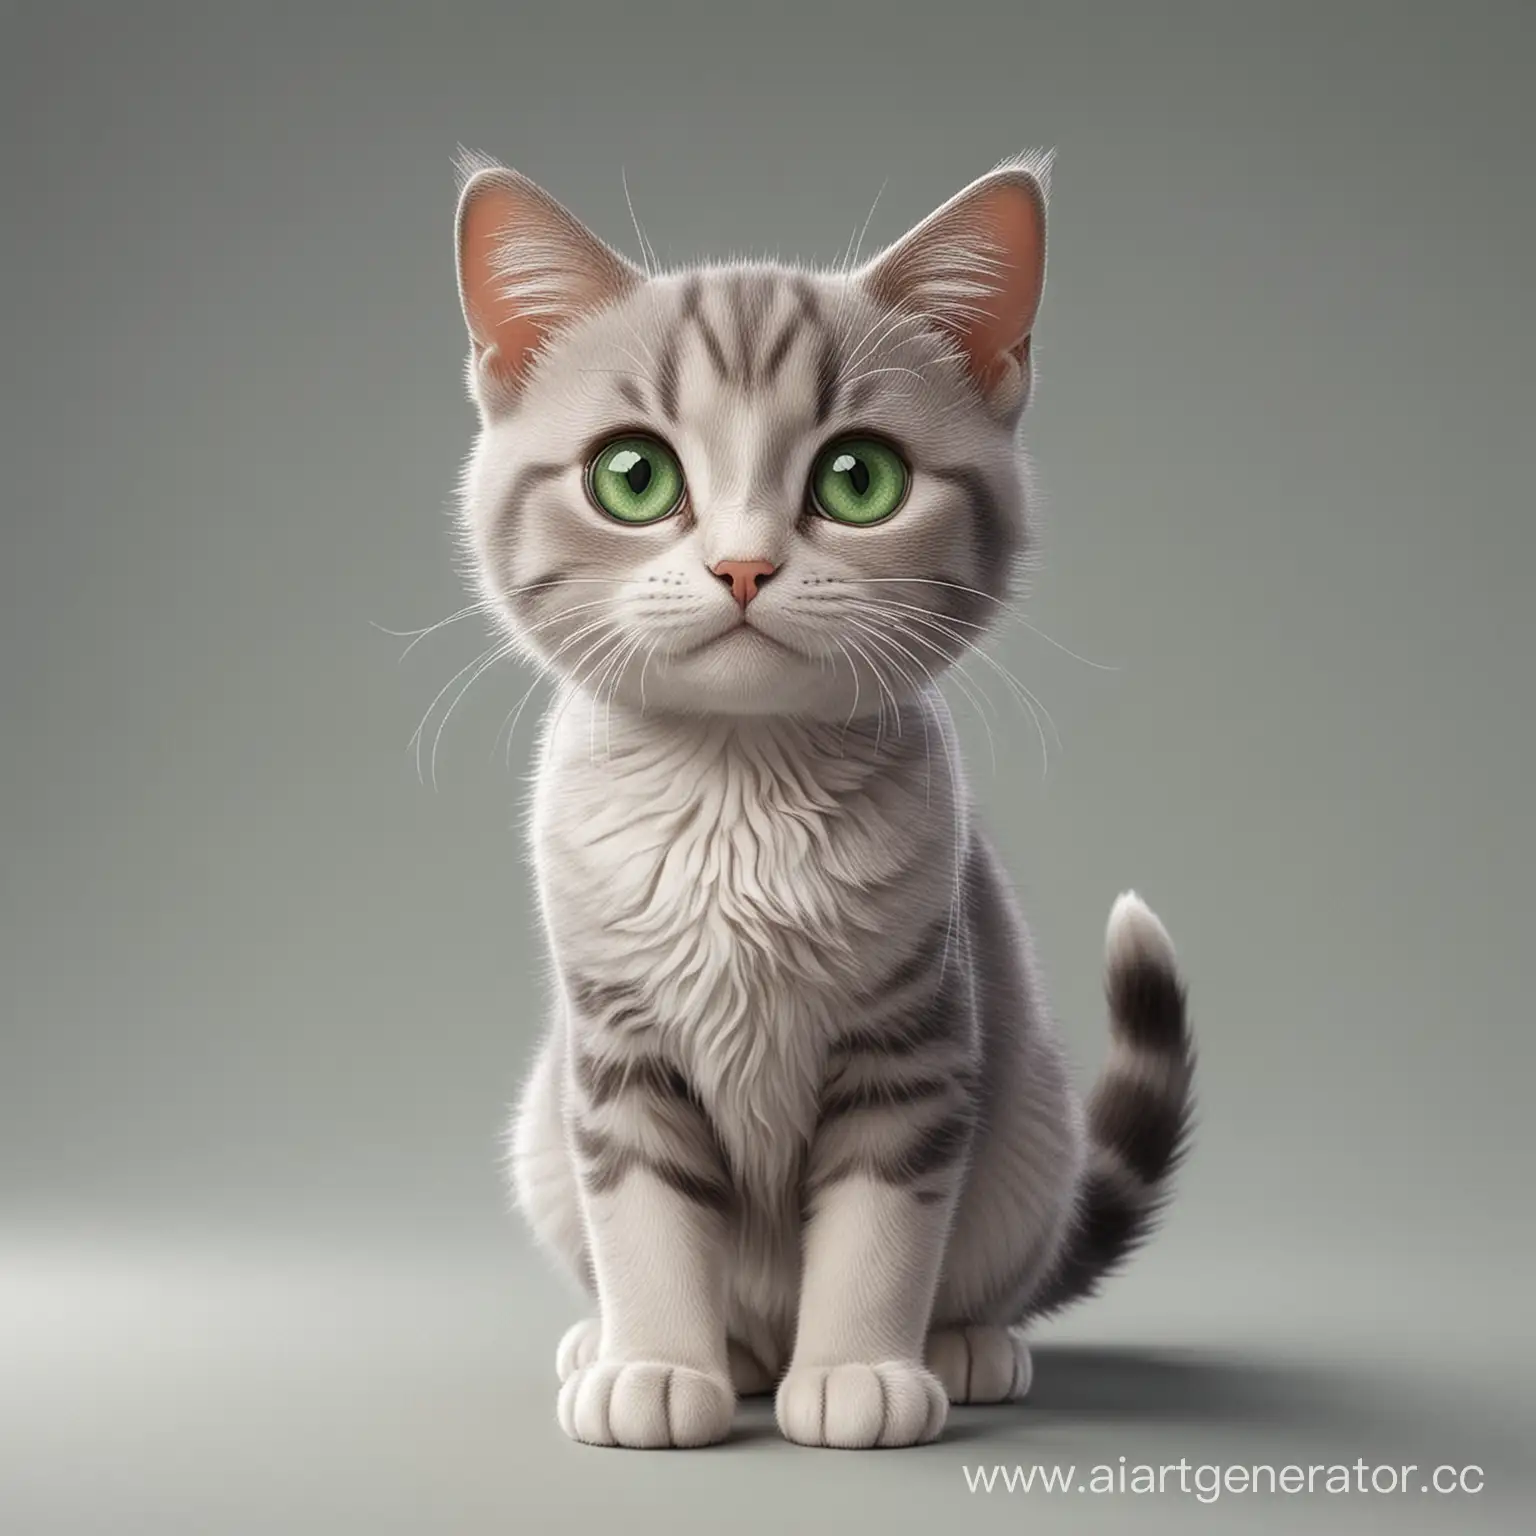 милого мультяшного котика с зелеными глазами в полный рост на сером фоне
